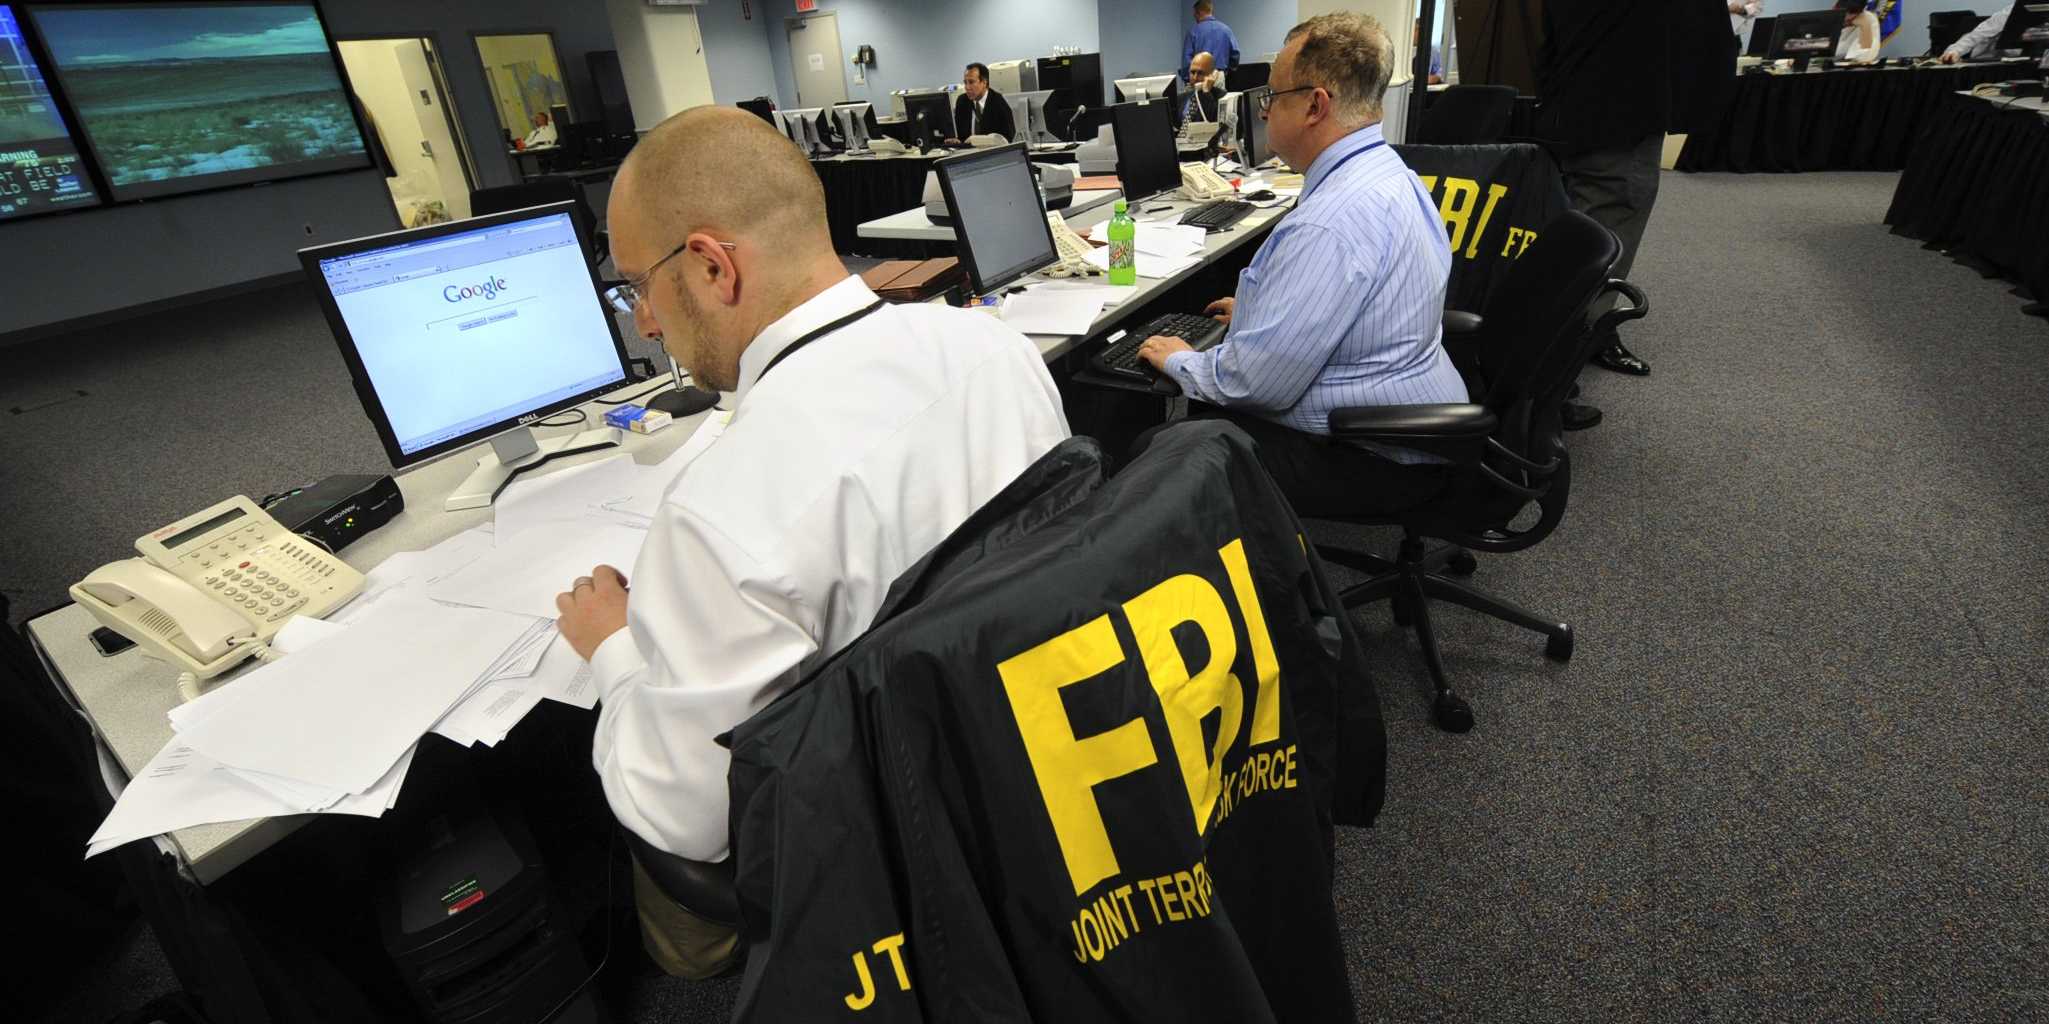 Agenti dell'Fbi effettuano ricerche al computer.